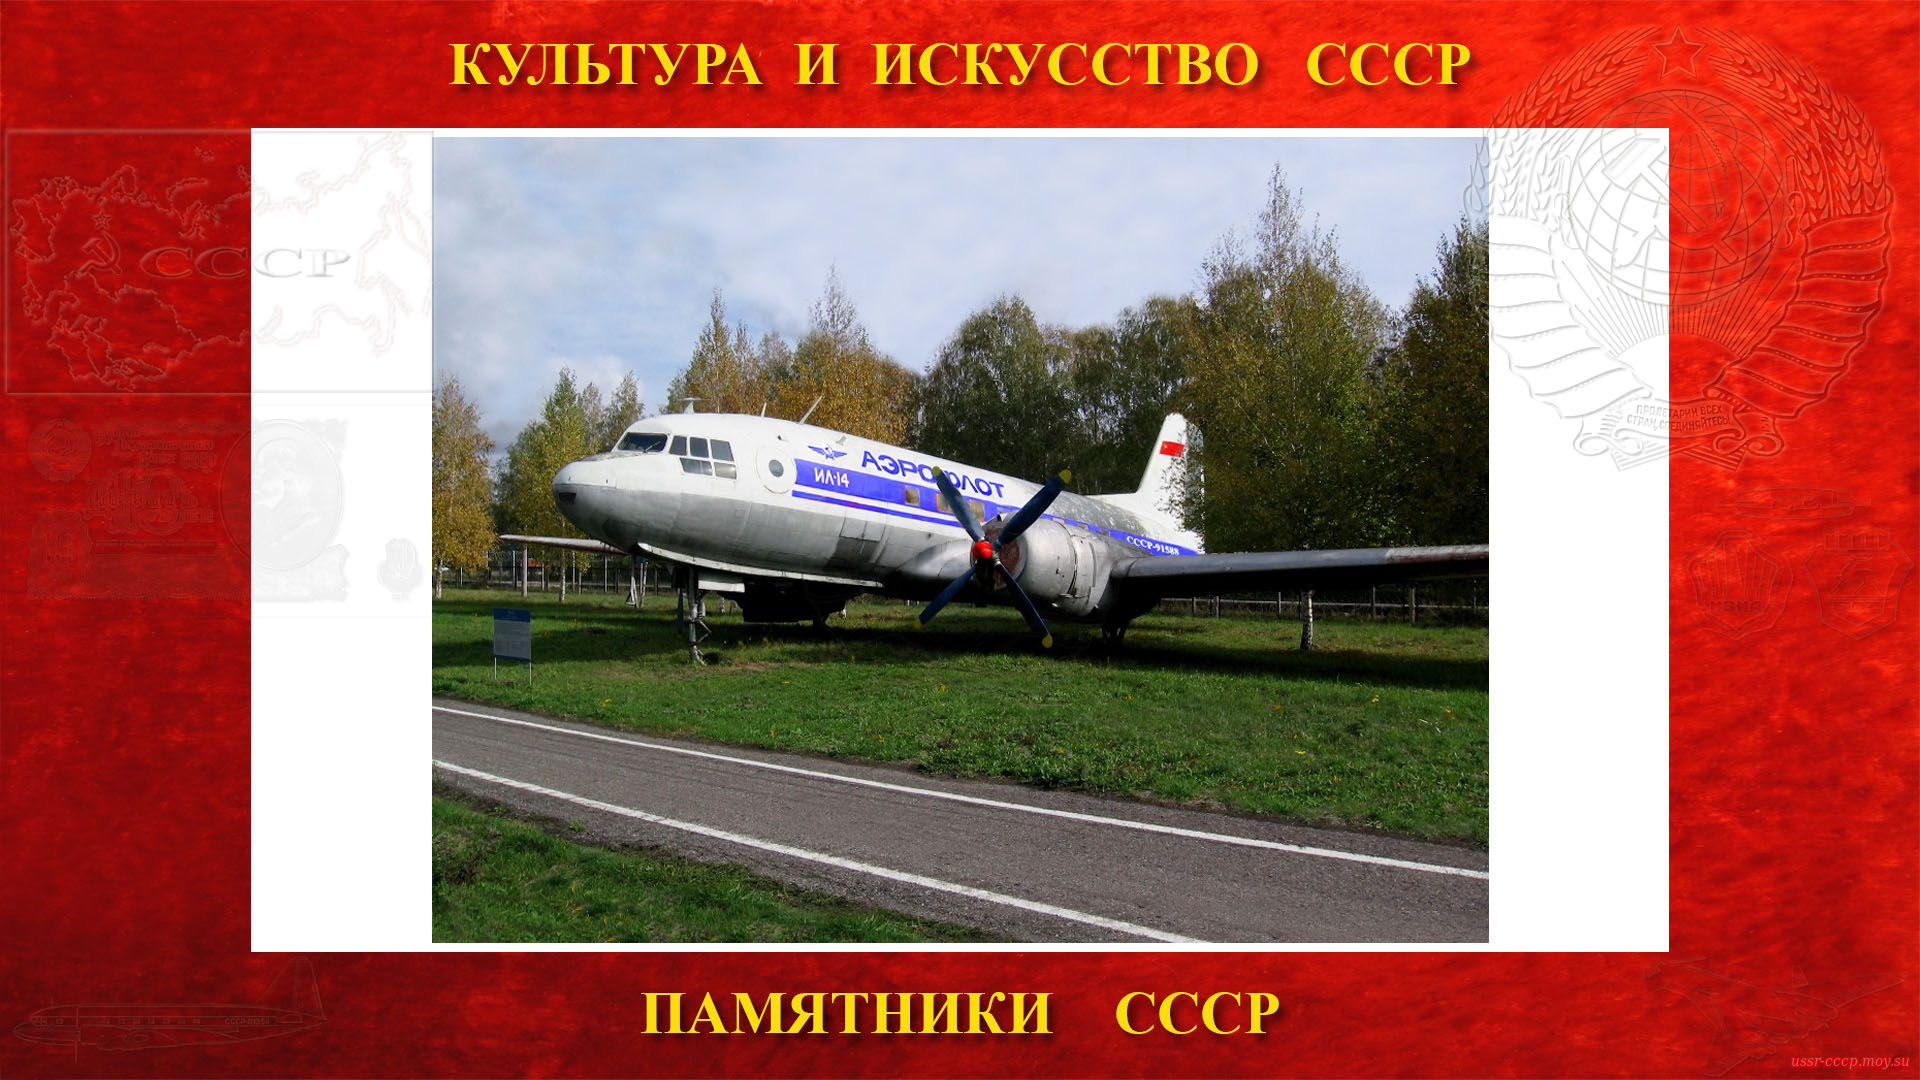 Памятник — Самолёт Ил-14 (Музей ГА Центра ГА СЭВ - Ульяновск) (повествование)